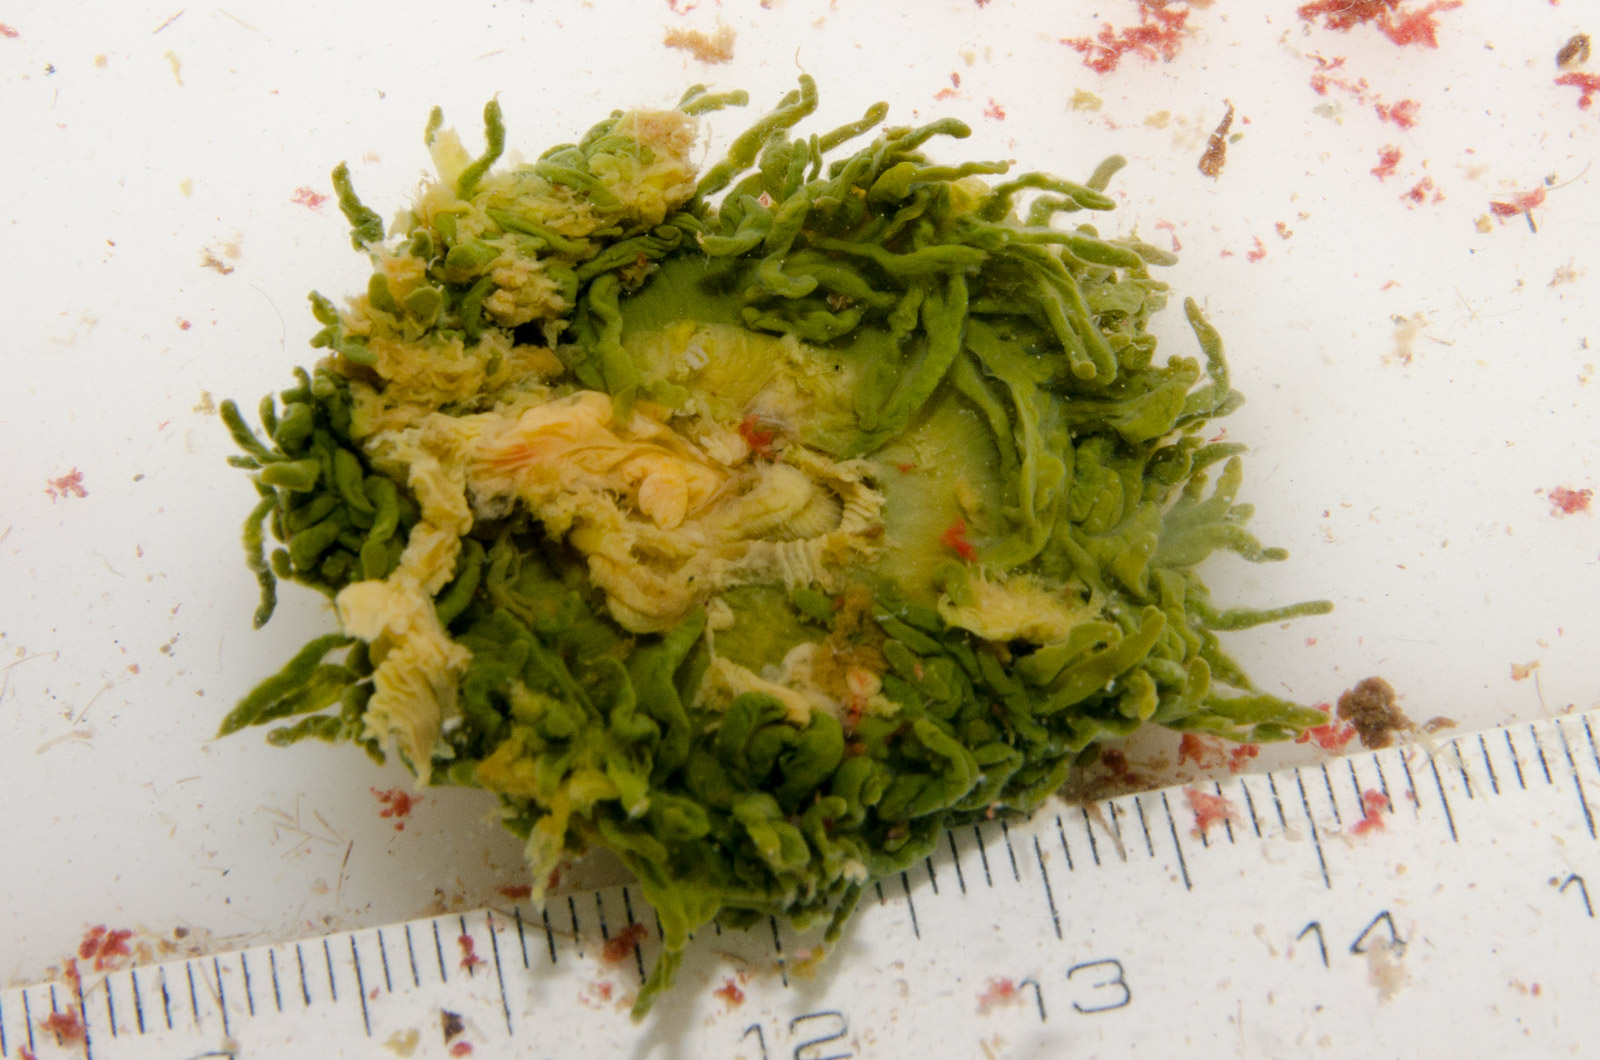 Anemonia viridis conservada en alcohol.